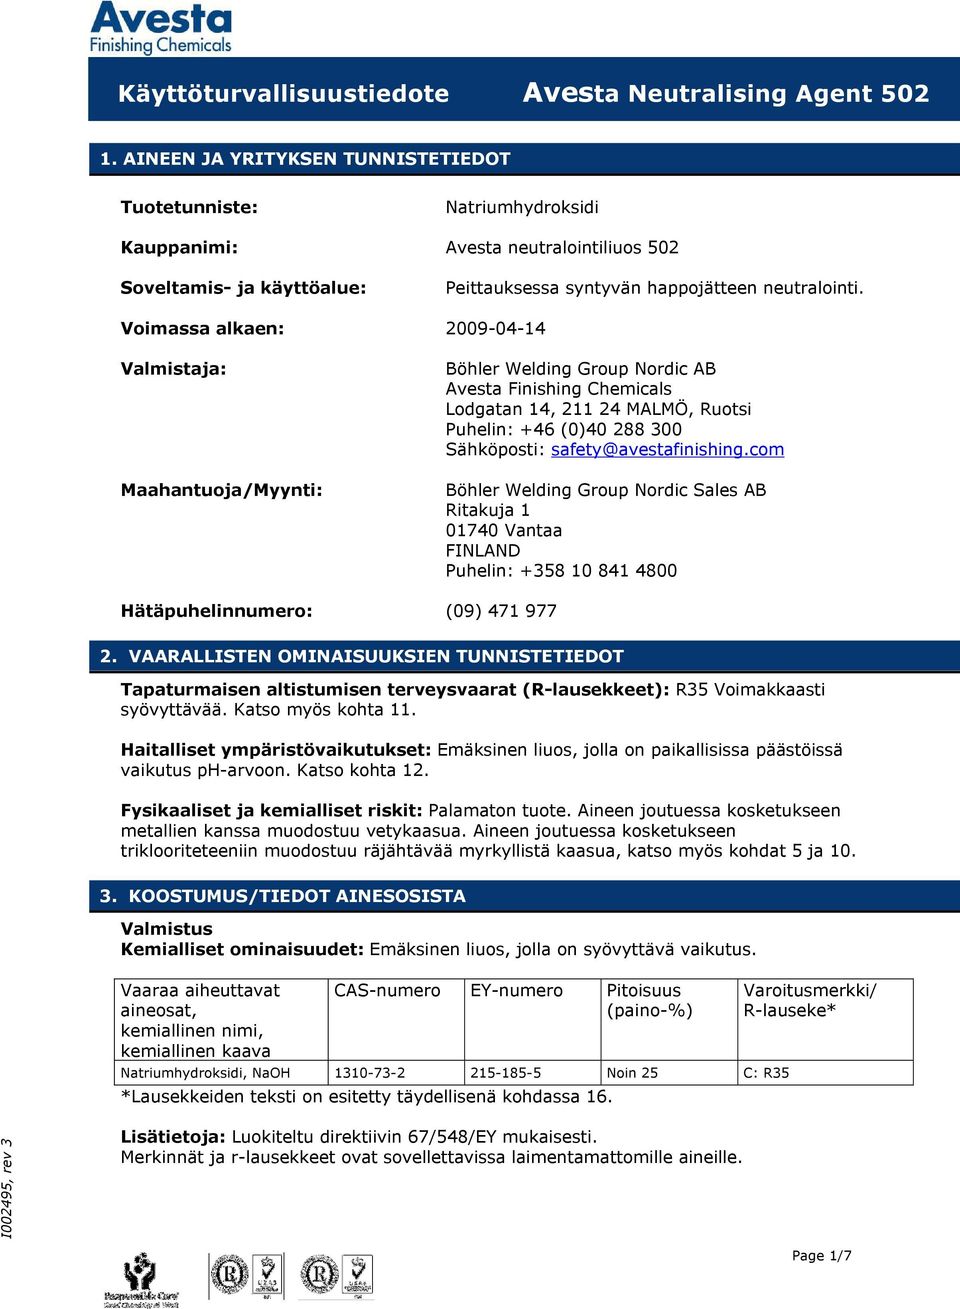 Voimassa alkaen: 2009-04-14 Valmistaja: Maahantuoja/Myynti: Böhler Welding Group Nordic AB Avesta Finishing Chemicals Lodgatan 14, 211 24 MALMÖ, Ruotsi Puhelin: +46 (0)40 288 300 Sähköposti: